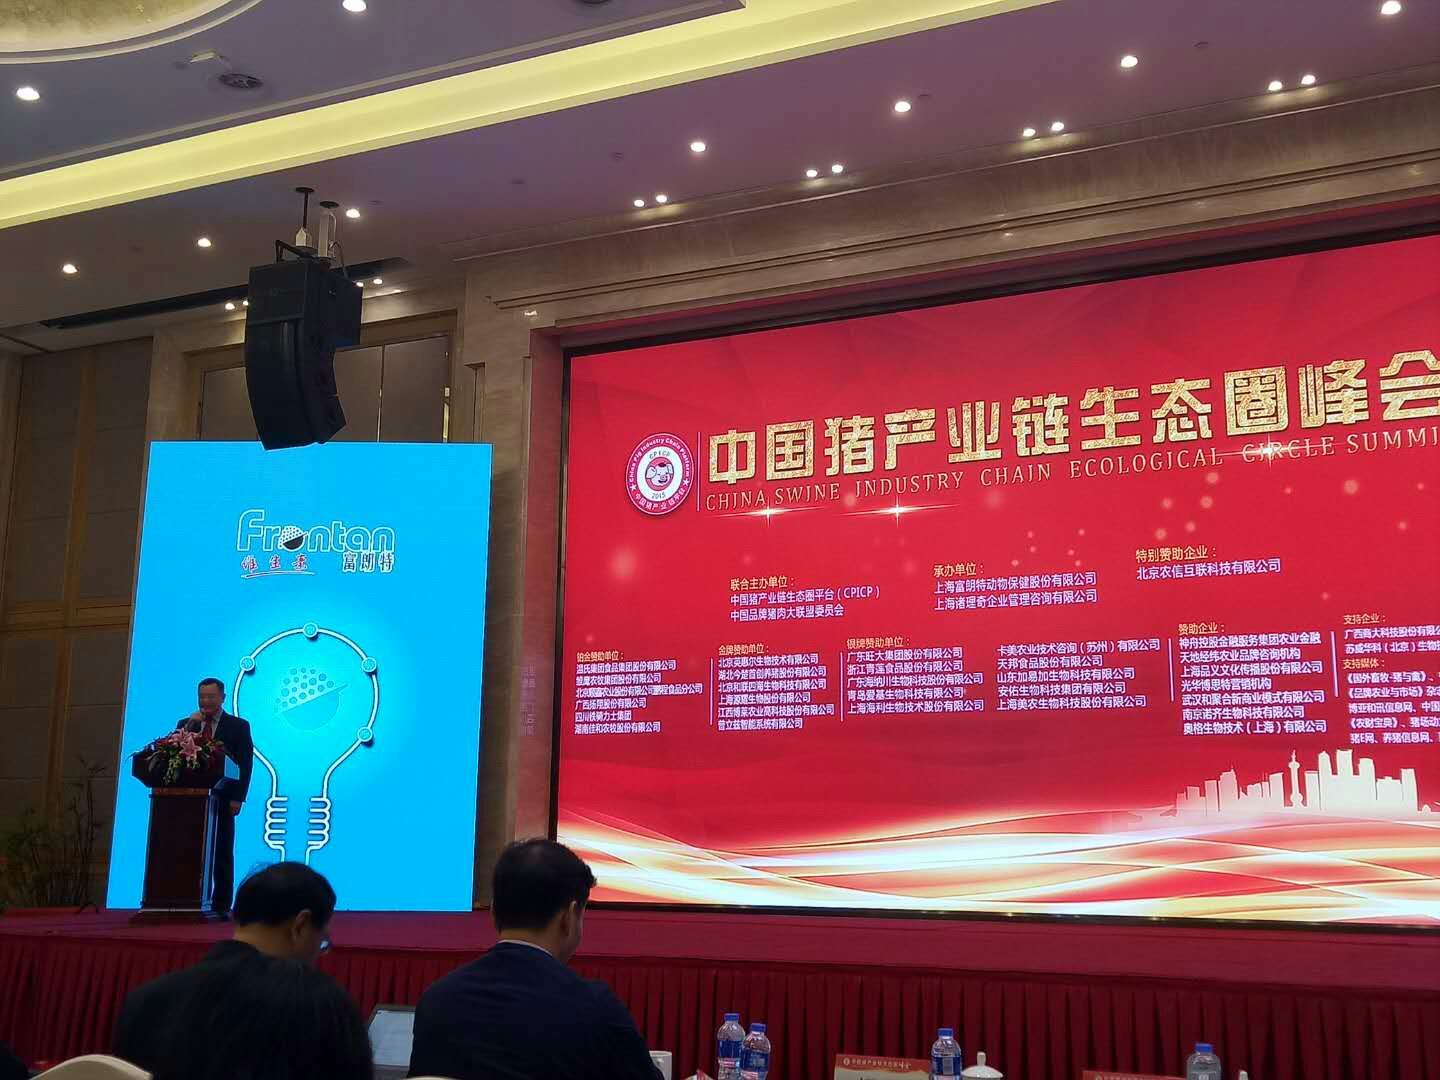 美瑞泰科金博士受邀主持“中国猪产业链生态圈峰会”